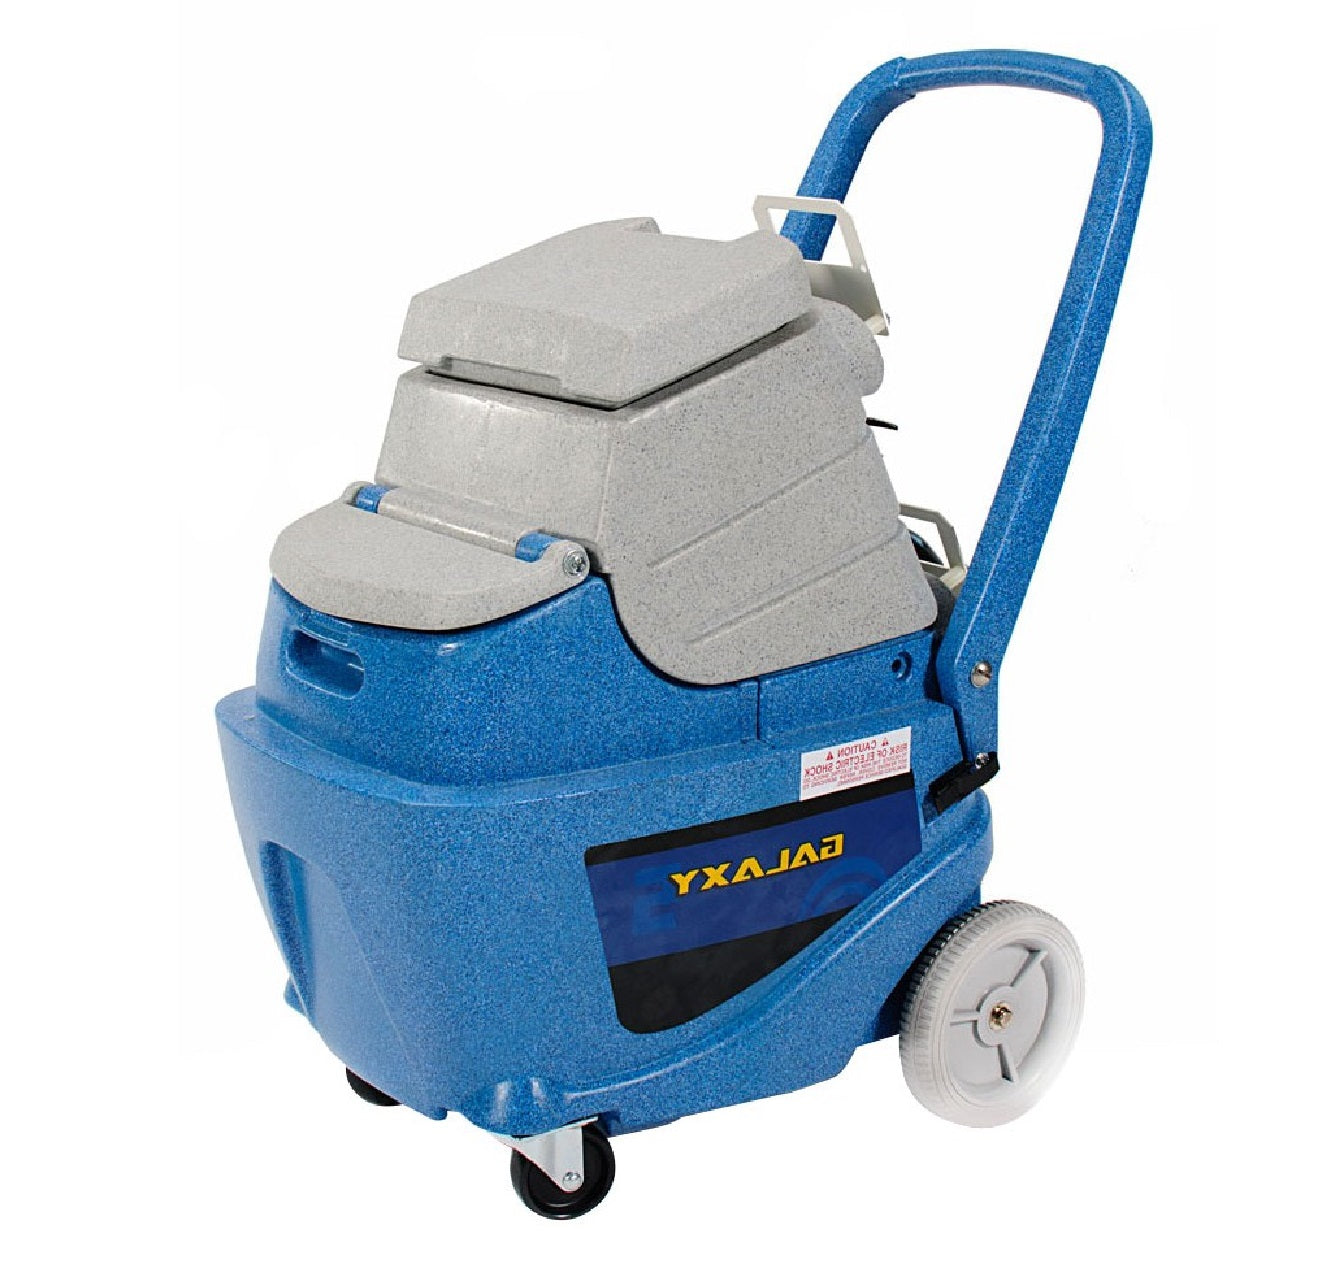 Edic 500BX-HR carpet washer